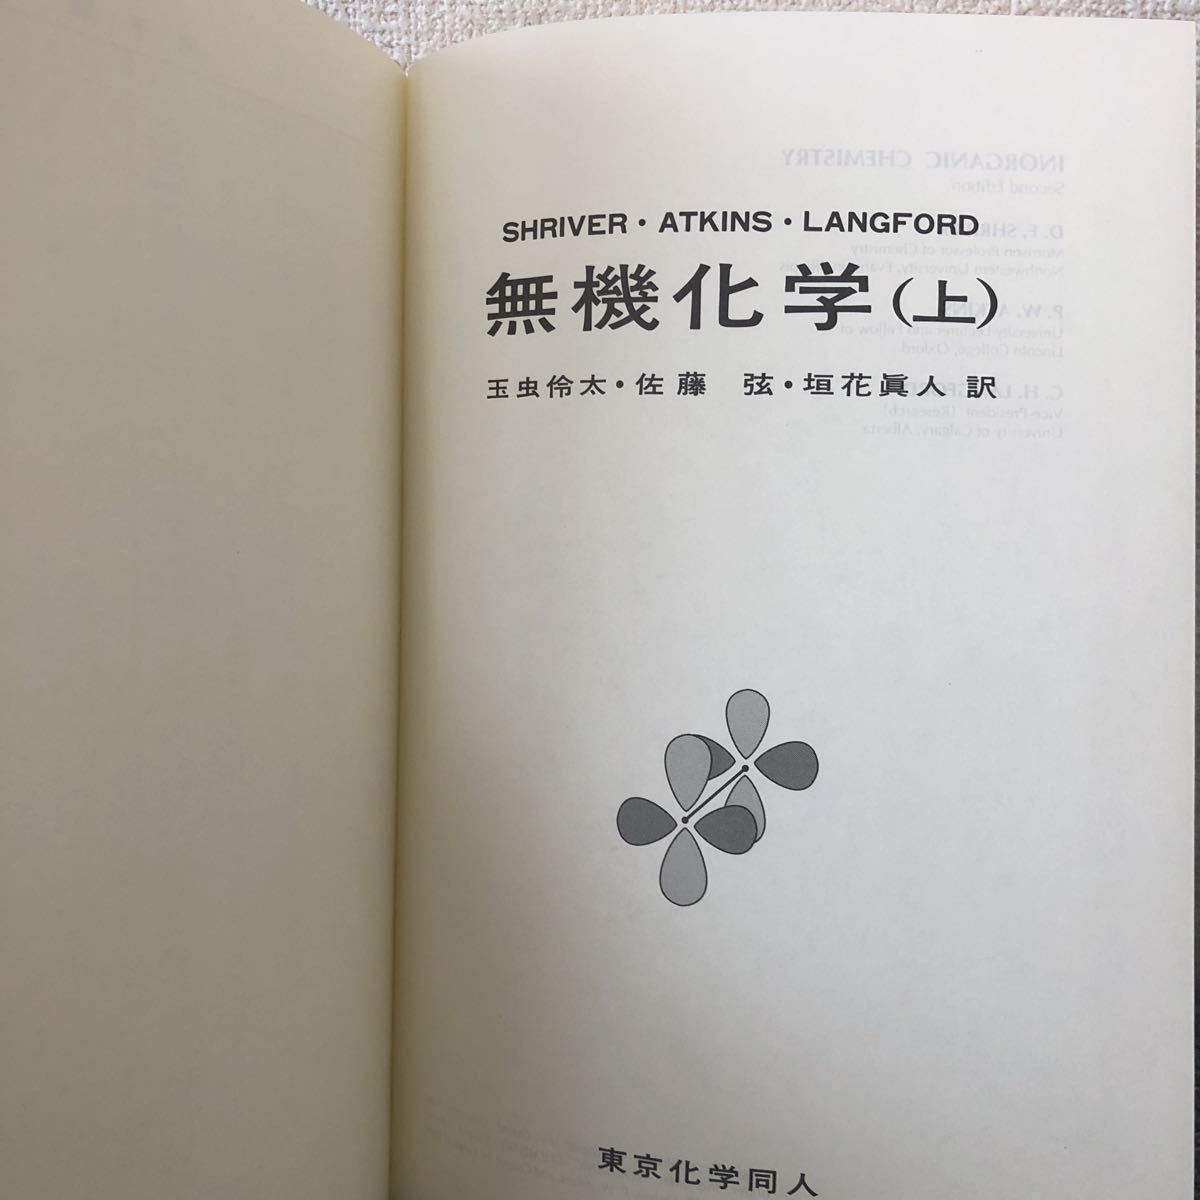  специализация документ shulai балка нет машина химия ( сверху / внизу ) Tokyo химия такой же человек 1996 год редкий товар 